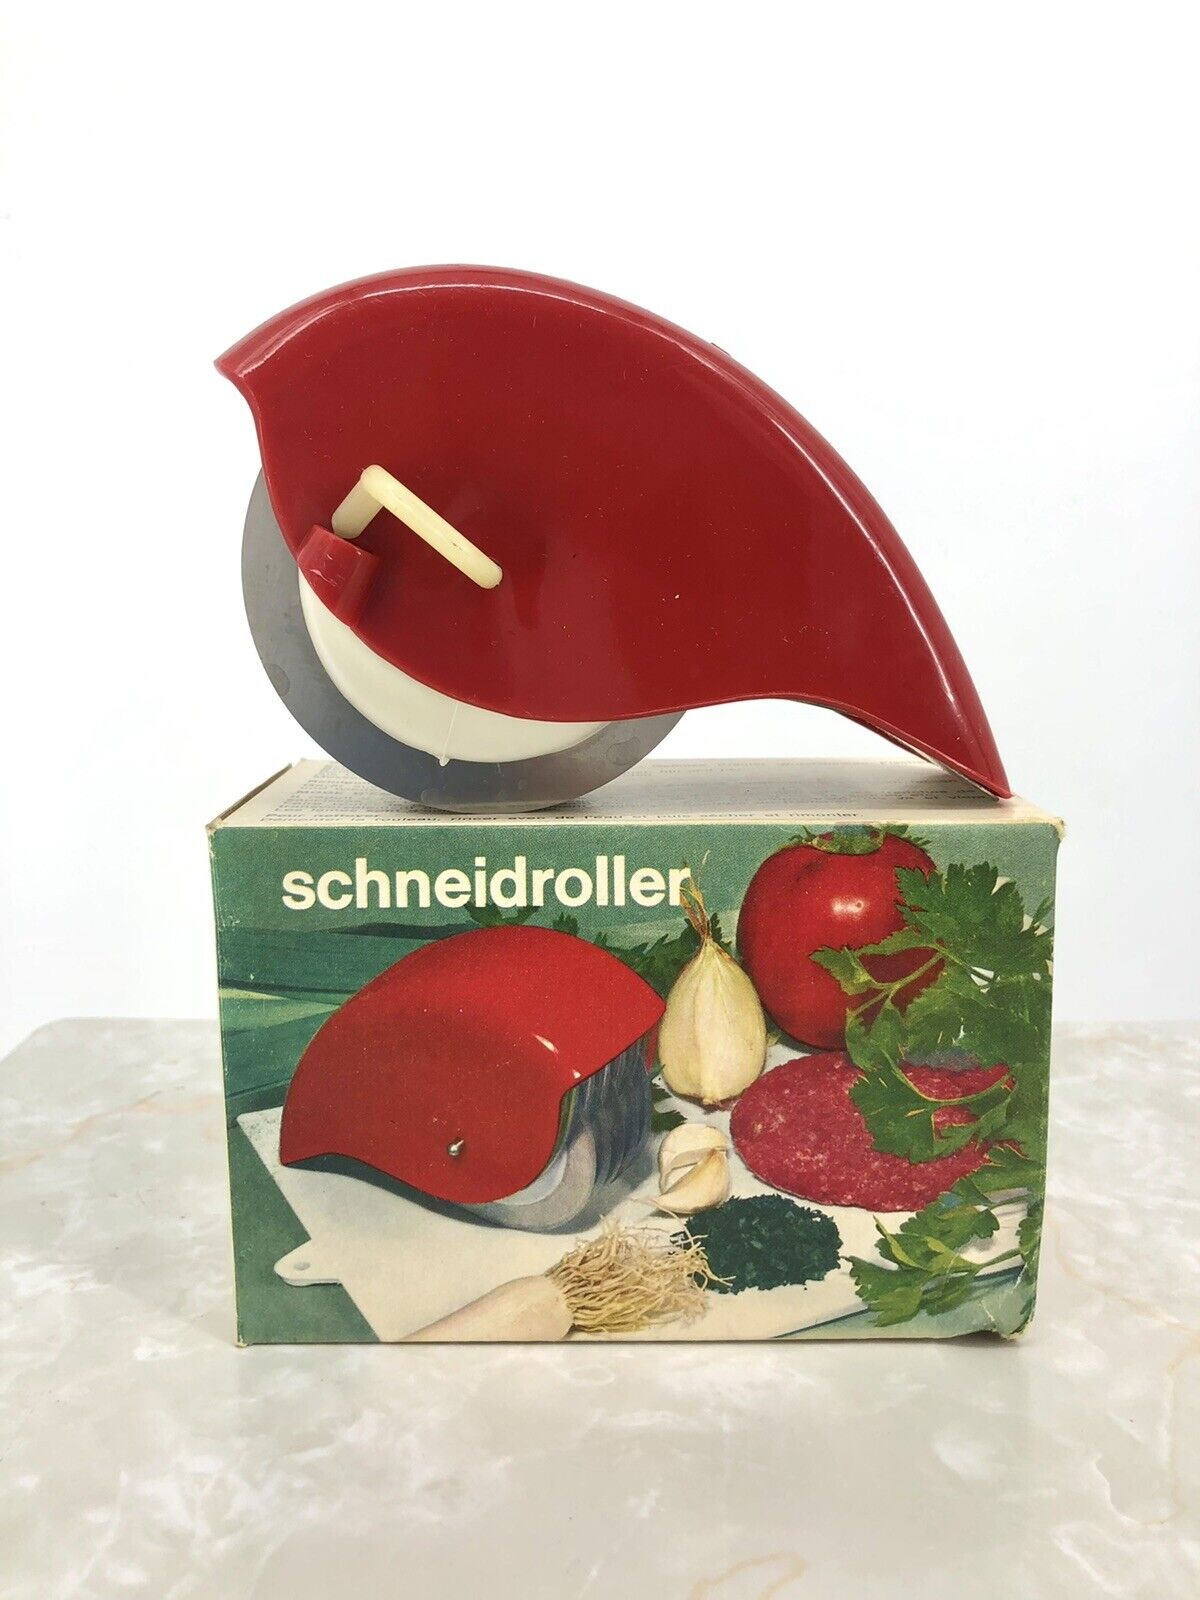 Ritter Schneidroller Universal Mincer Chopper - Germany Vintage Kitchen Baking